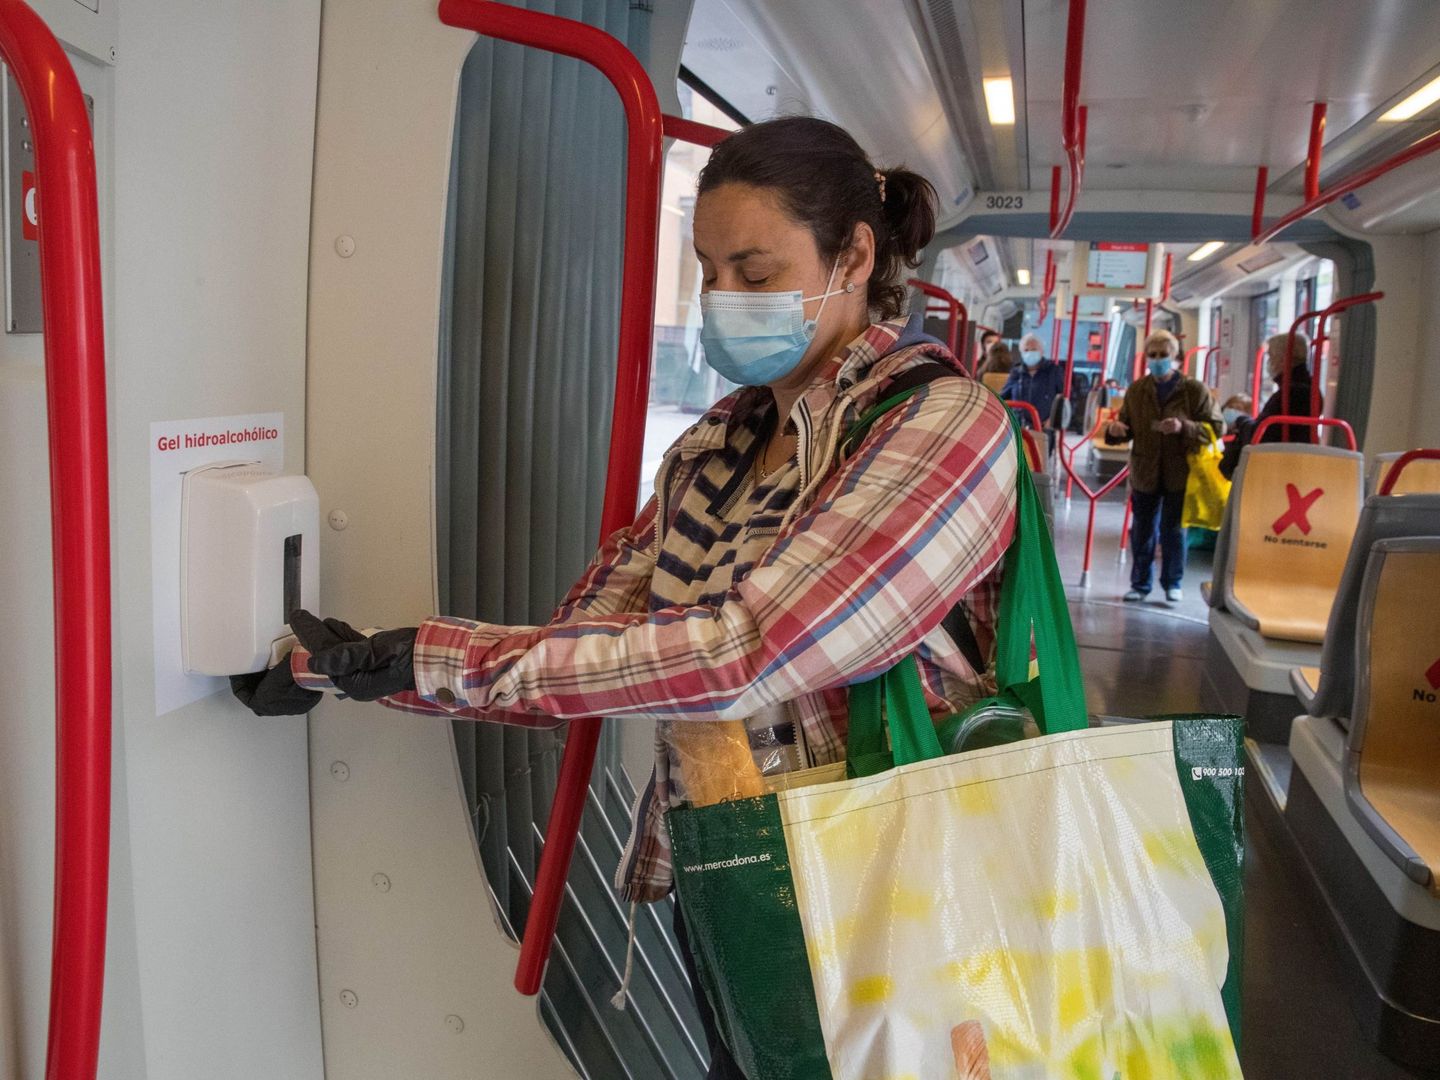 Una persona utiliza el gel hidroalcohólico en el transporte público. (EFE)